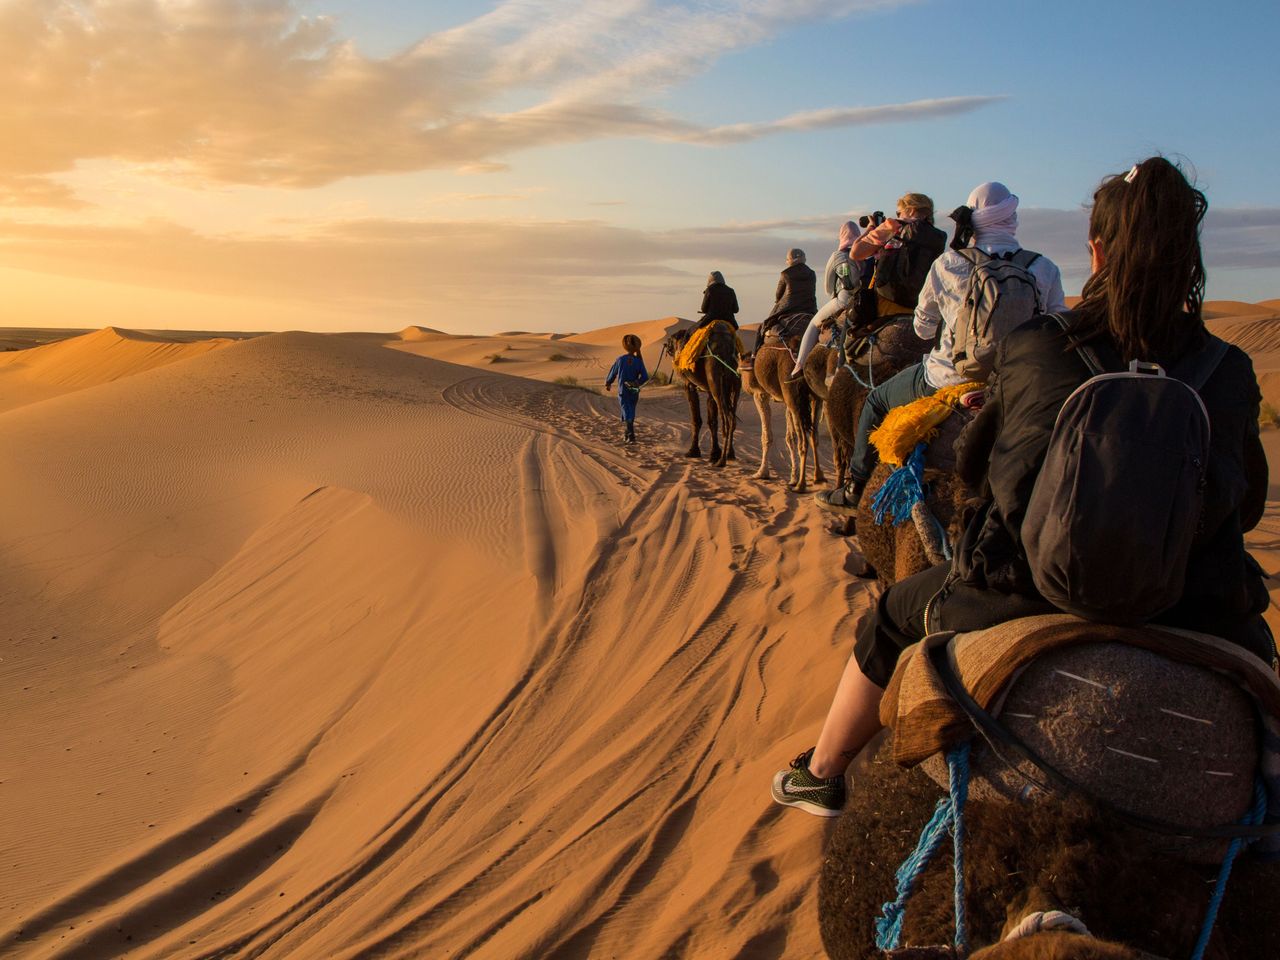 Trekking in the Sahara Desert